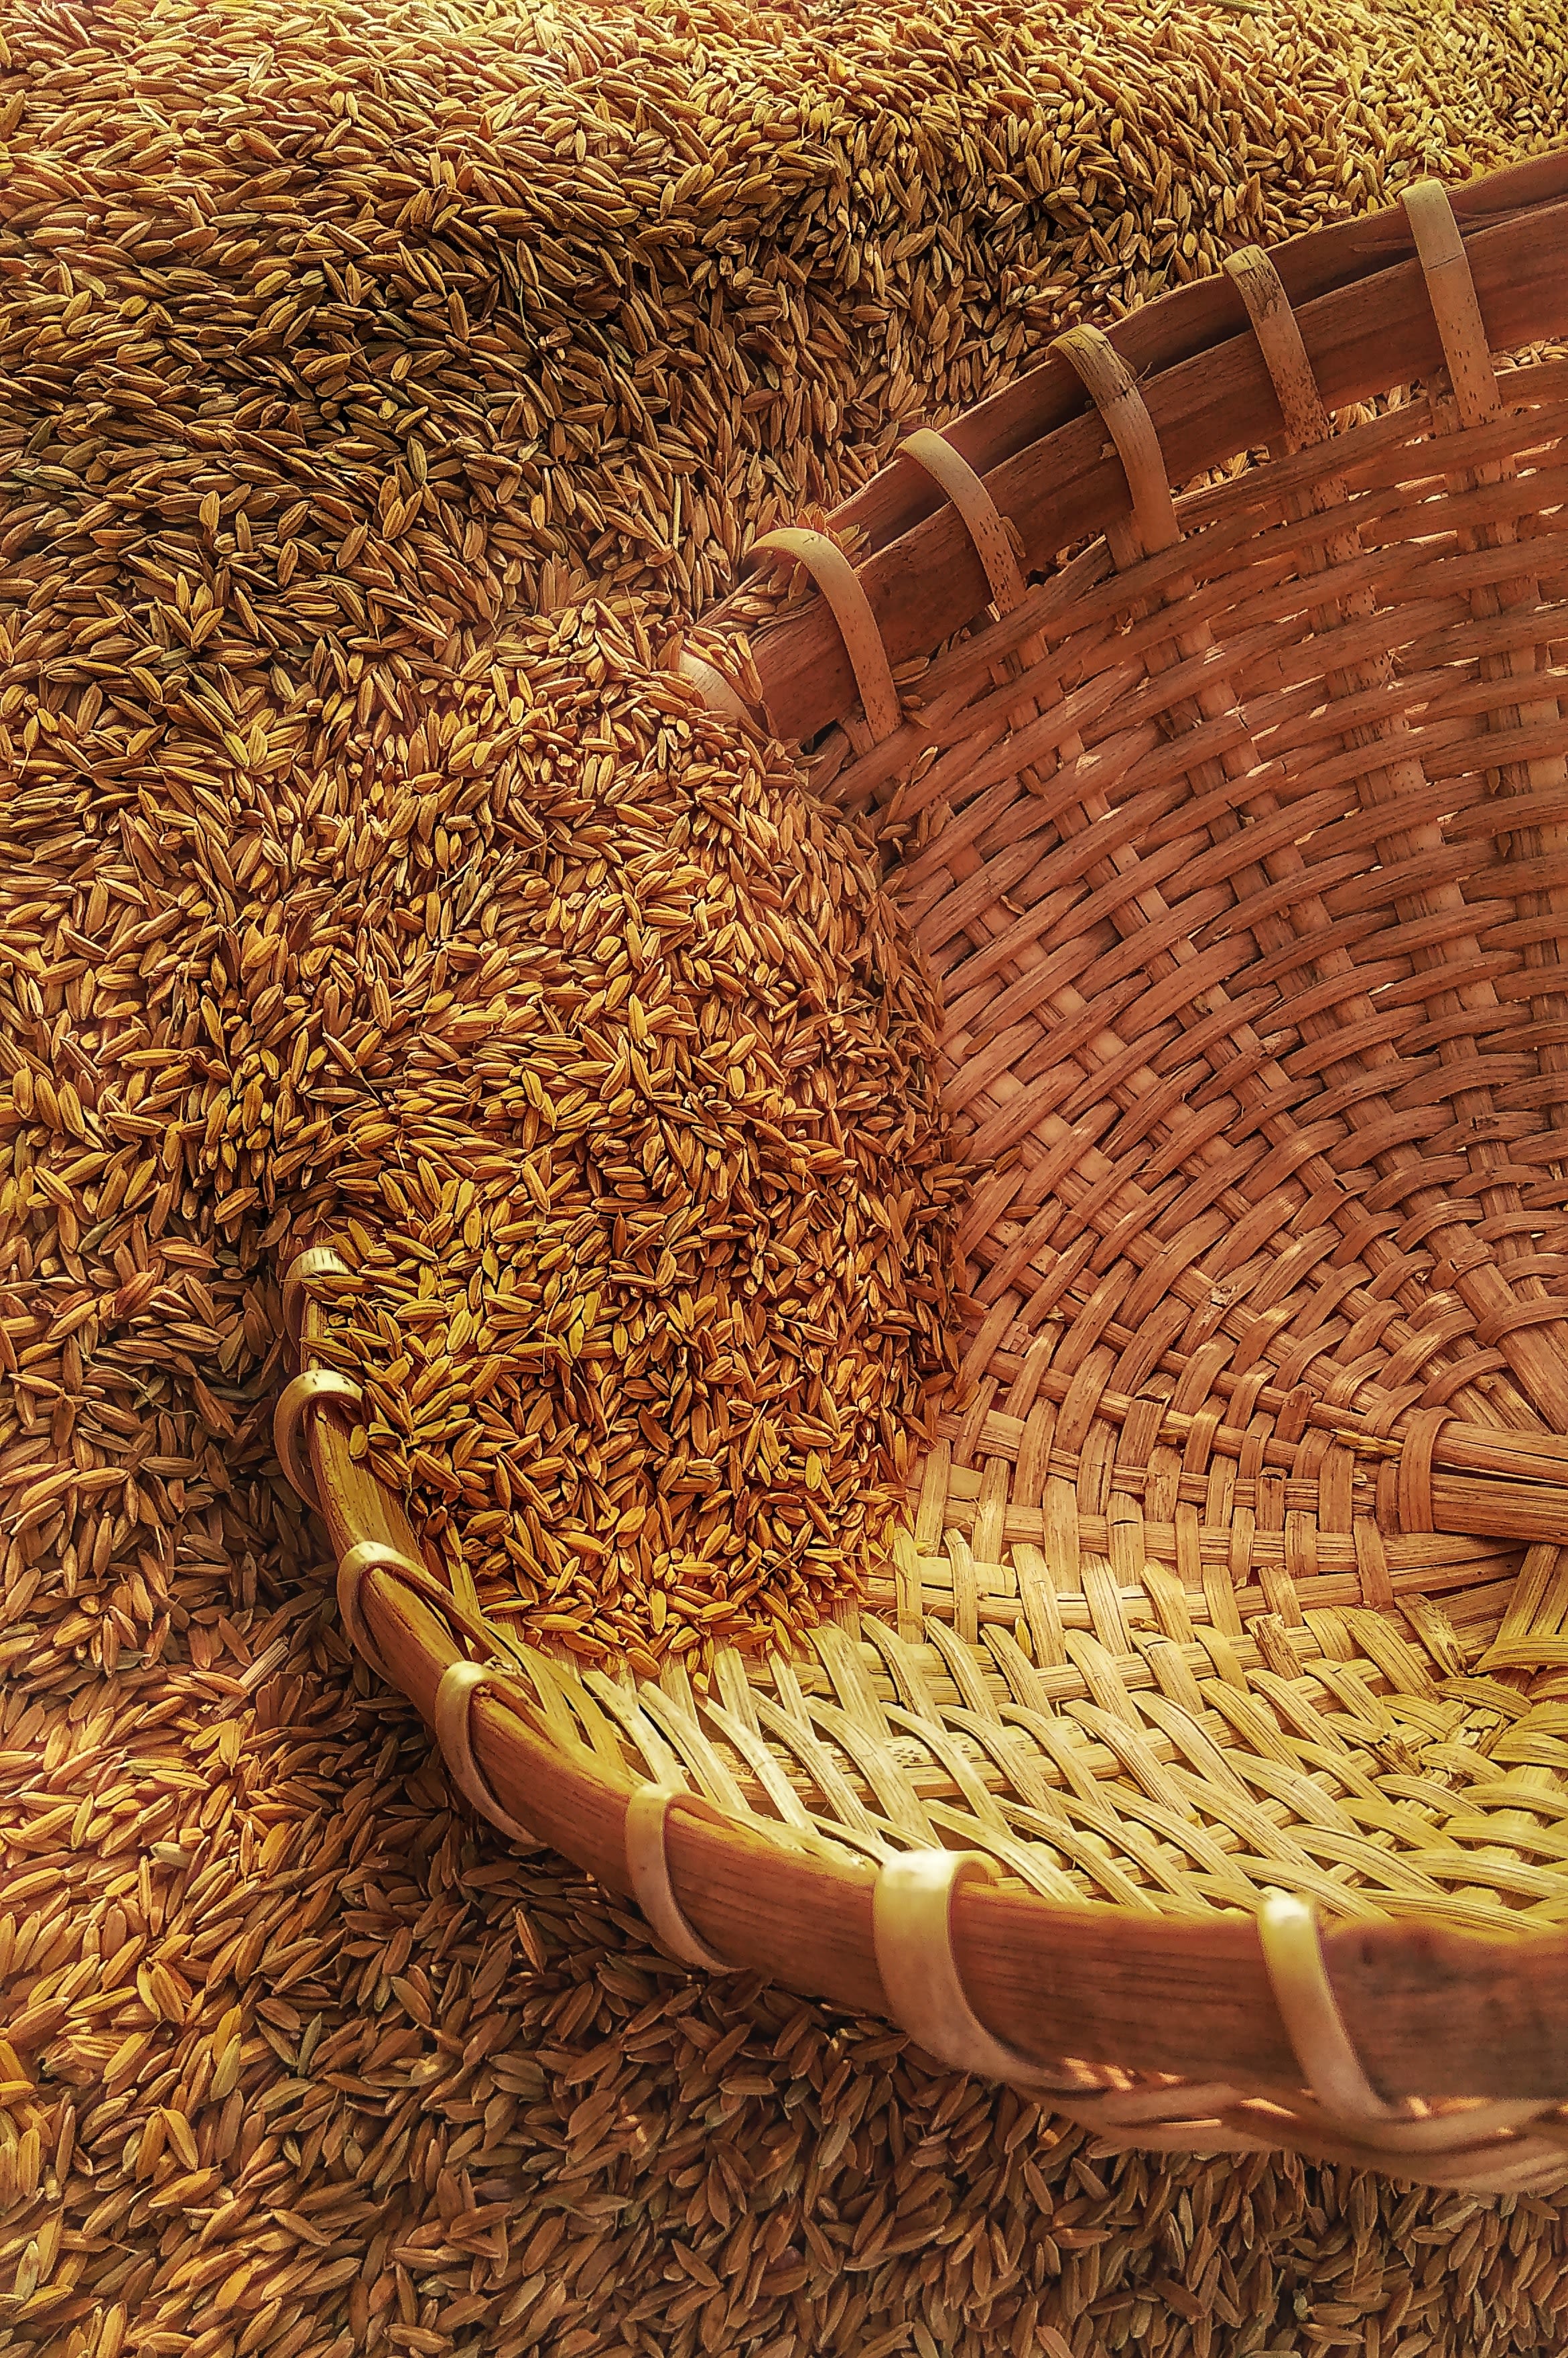 wicker basket on rice grains